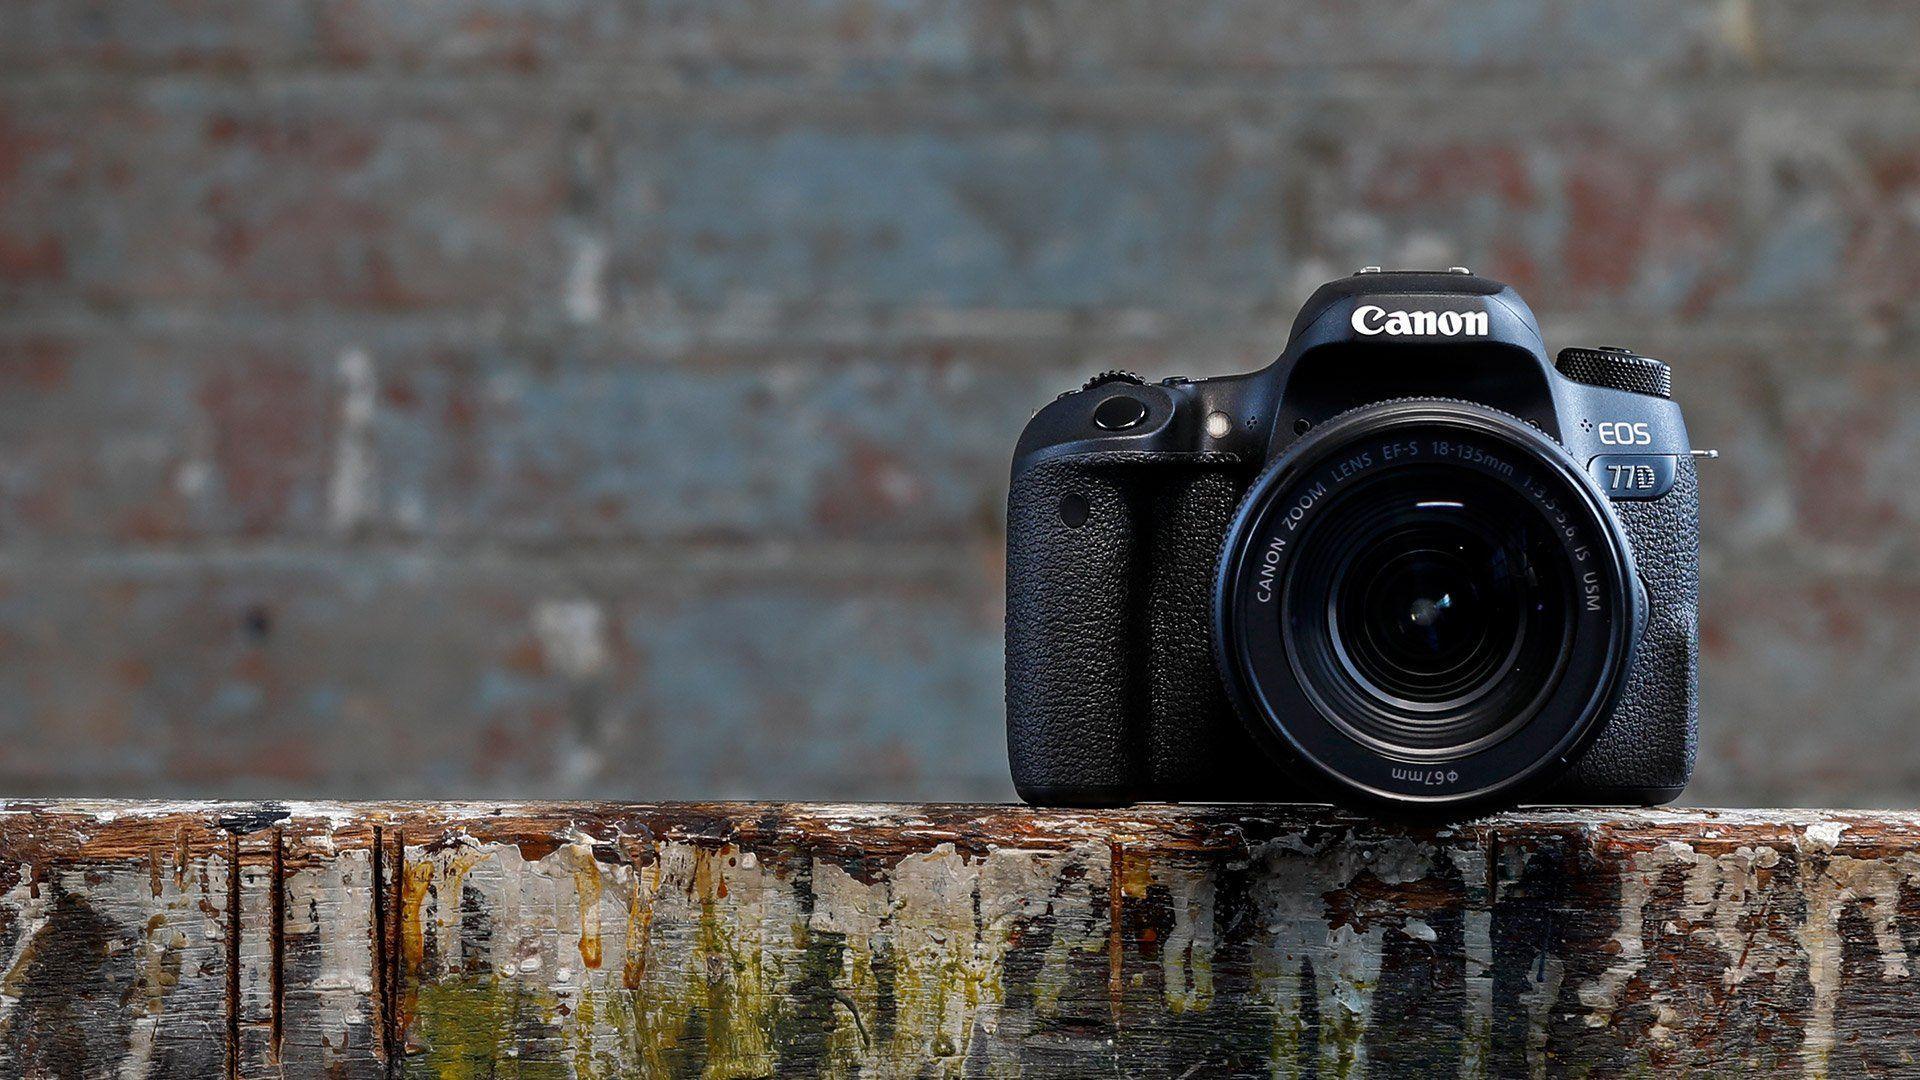 Bộ hình nền background tự tạo từ máy ảnh Canon 750D